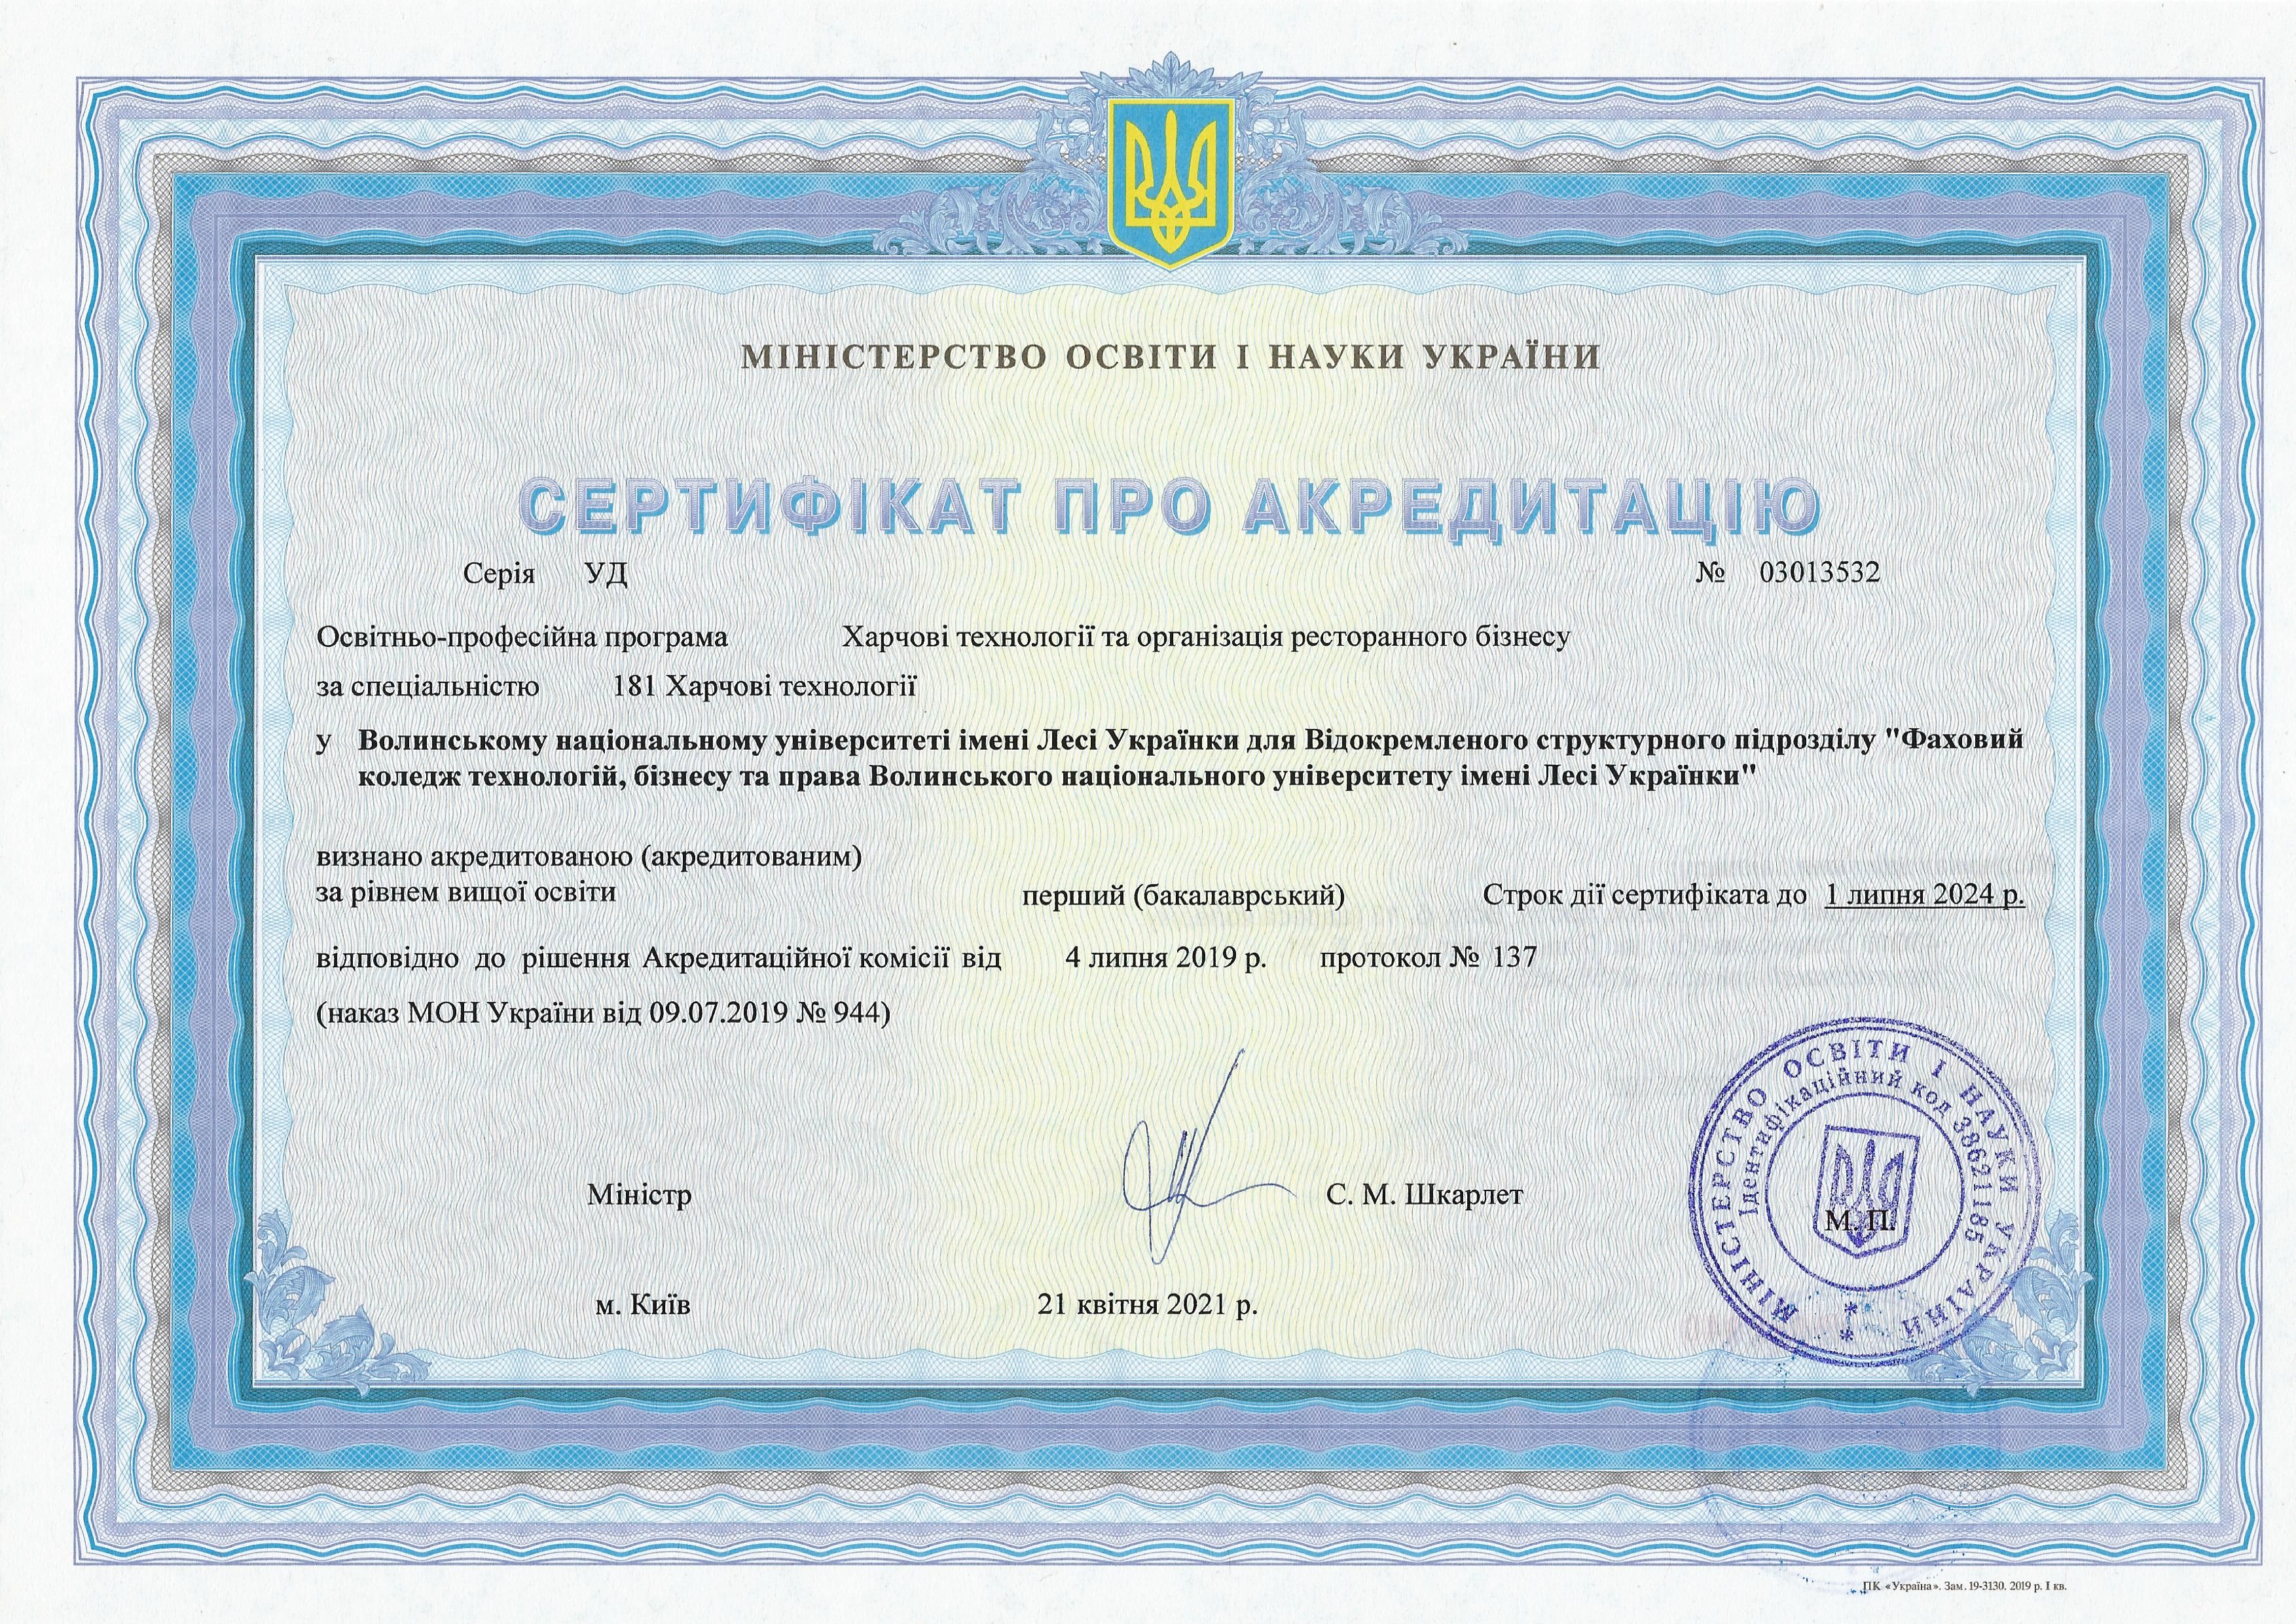 Сертифікати про акредитацію - 181 Бакалавр.jpg